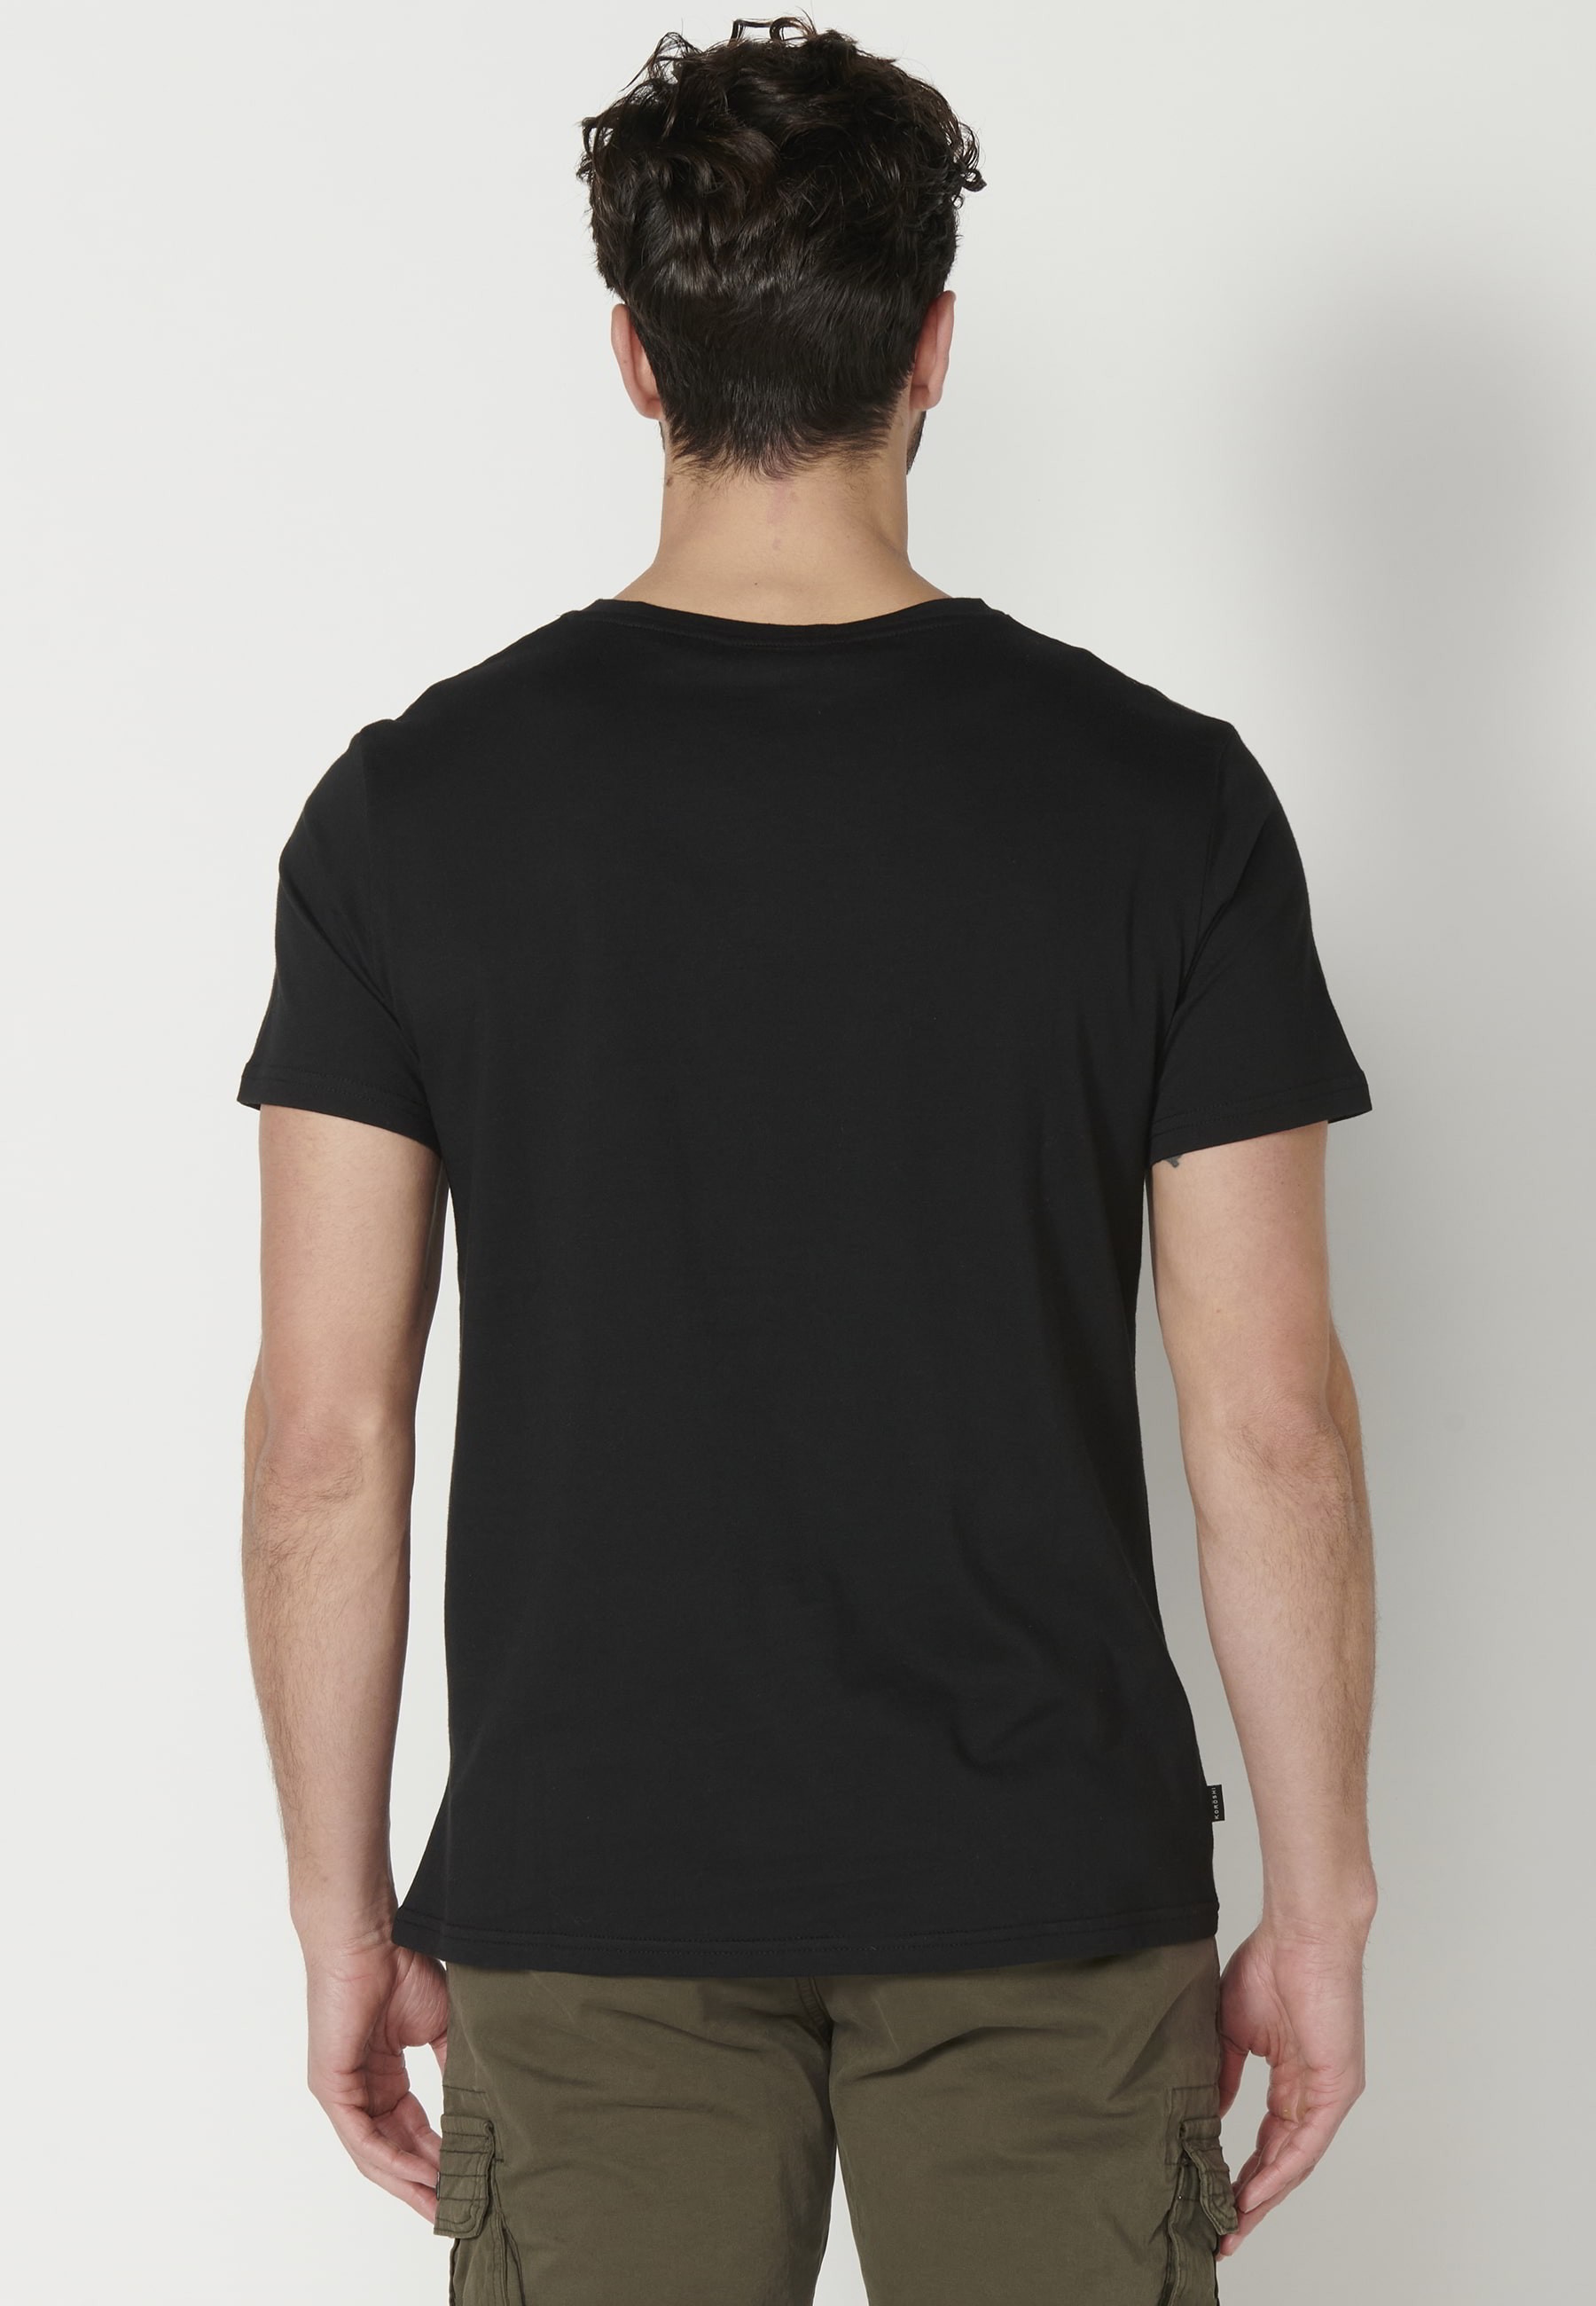 Camiseta de Manga corta de Algodón con Estampado delantero Color Negro para Hombre